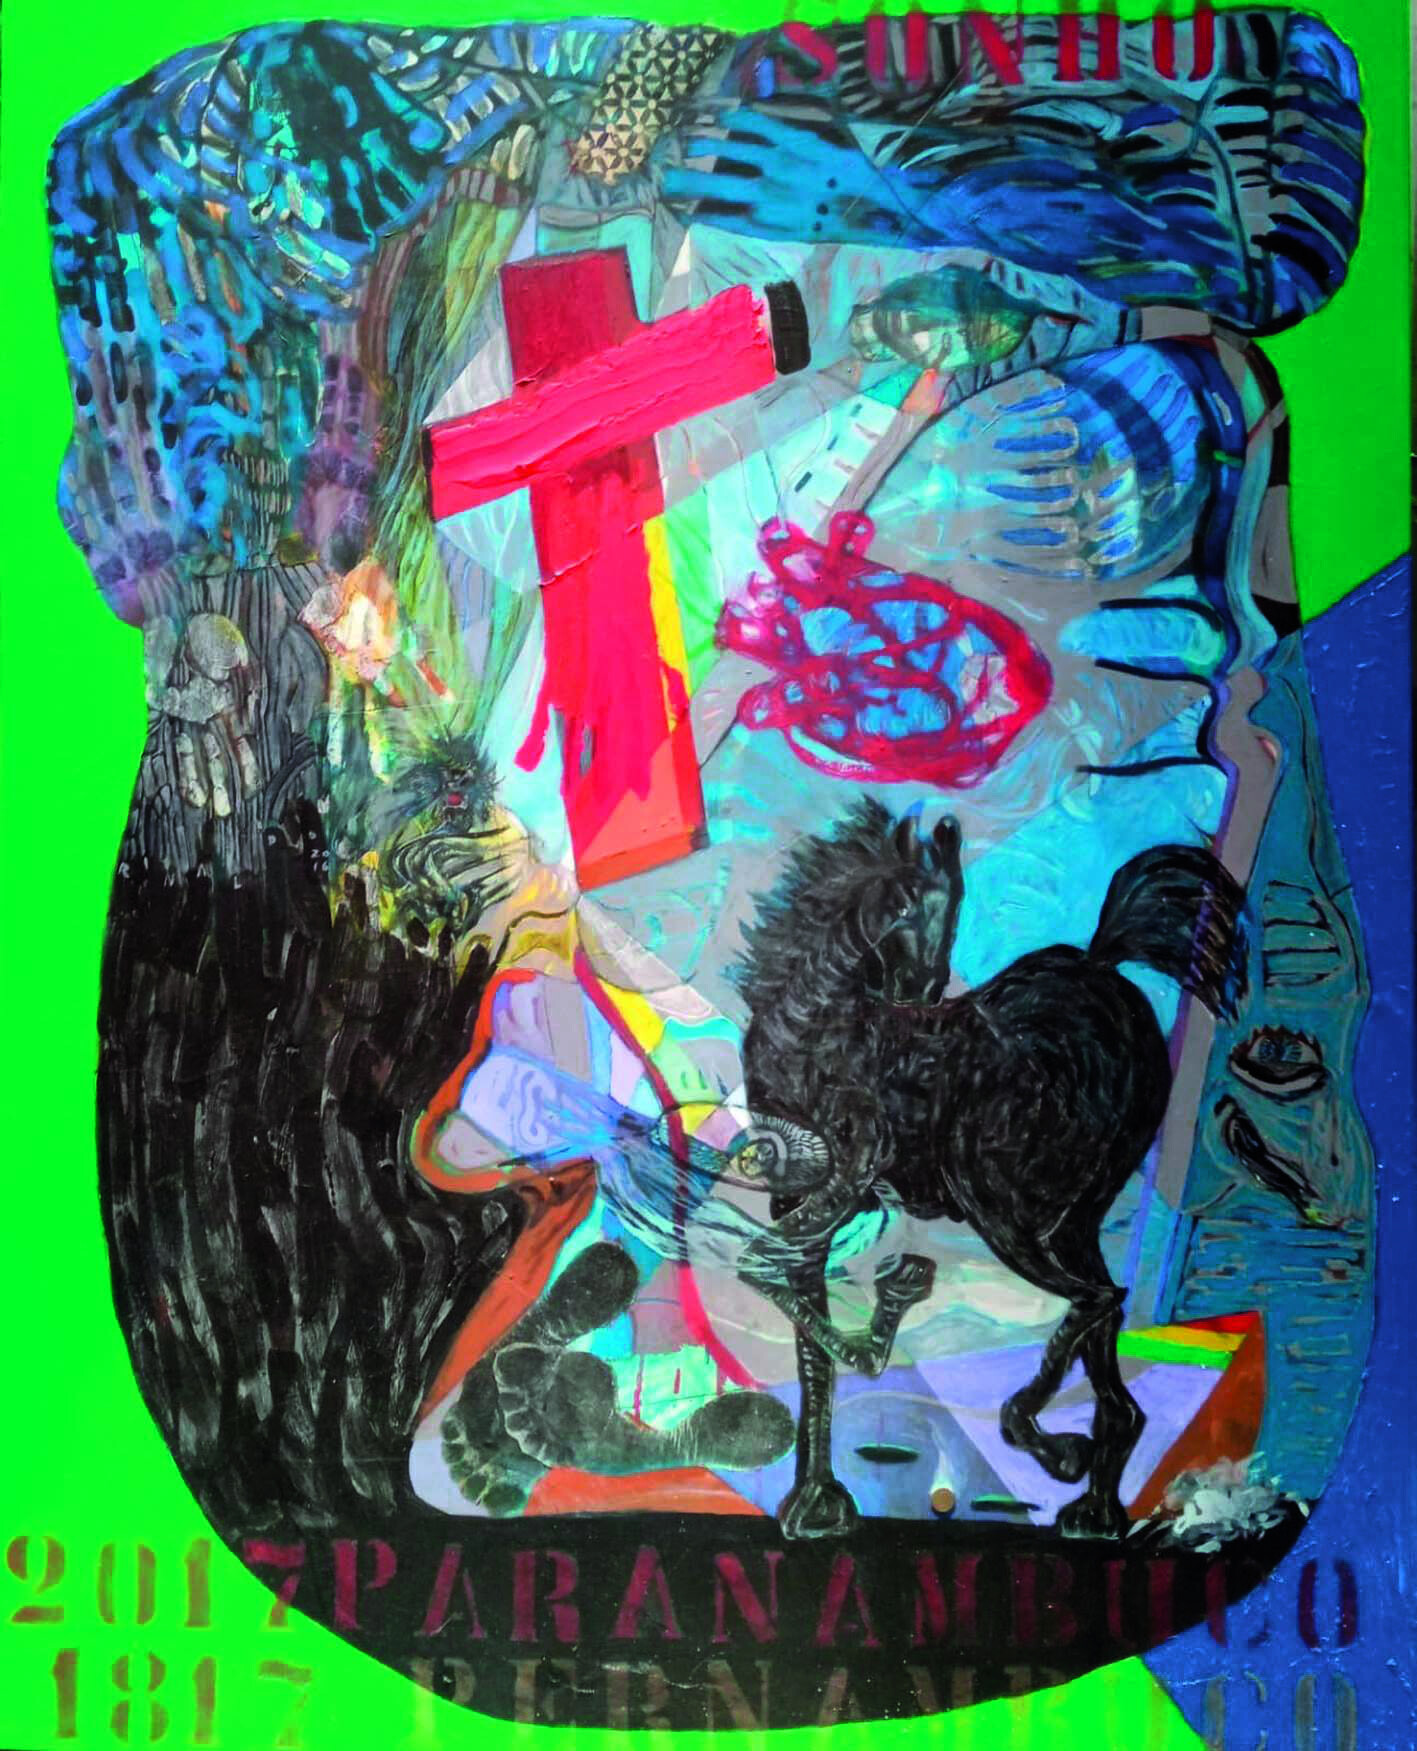 Pintura. Sobre um fundo verde, uma forma arredondada azul e preta. Sobre eles,  diversos símbolos, como um crucifixo vermelho manchado de amarelo, a silhueta de um cavalo na cor preta, solas de pés, pessoas e rostos humanos. 
No alto, à direita, em letras de forma na cor vermelha, o texto: 'Sonho'.
Na parte inferior, em letras de forma na cor vermelha, o texto: '2017. Paranambuco. 1817. Pernambuco'.